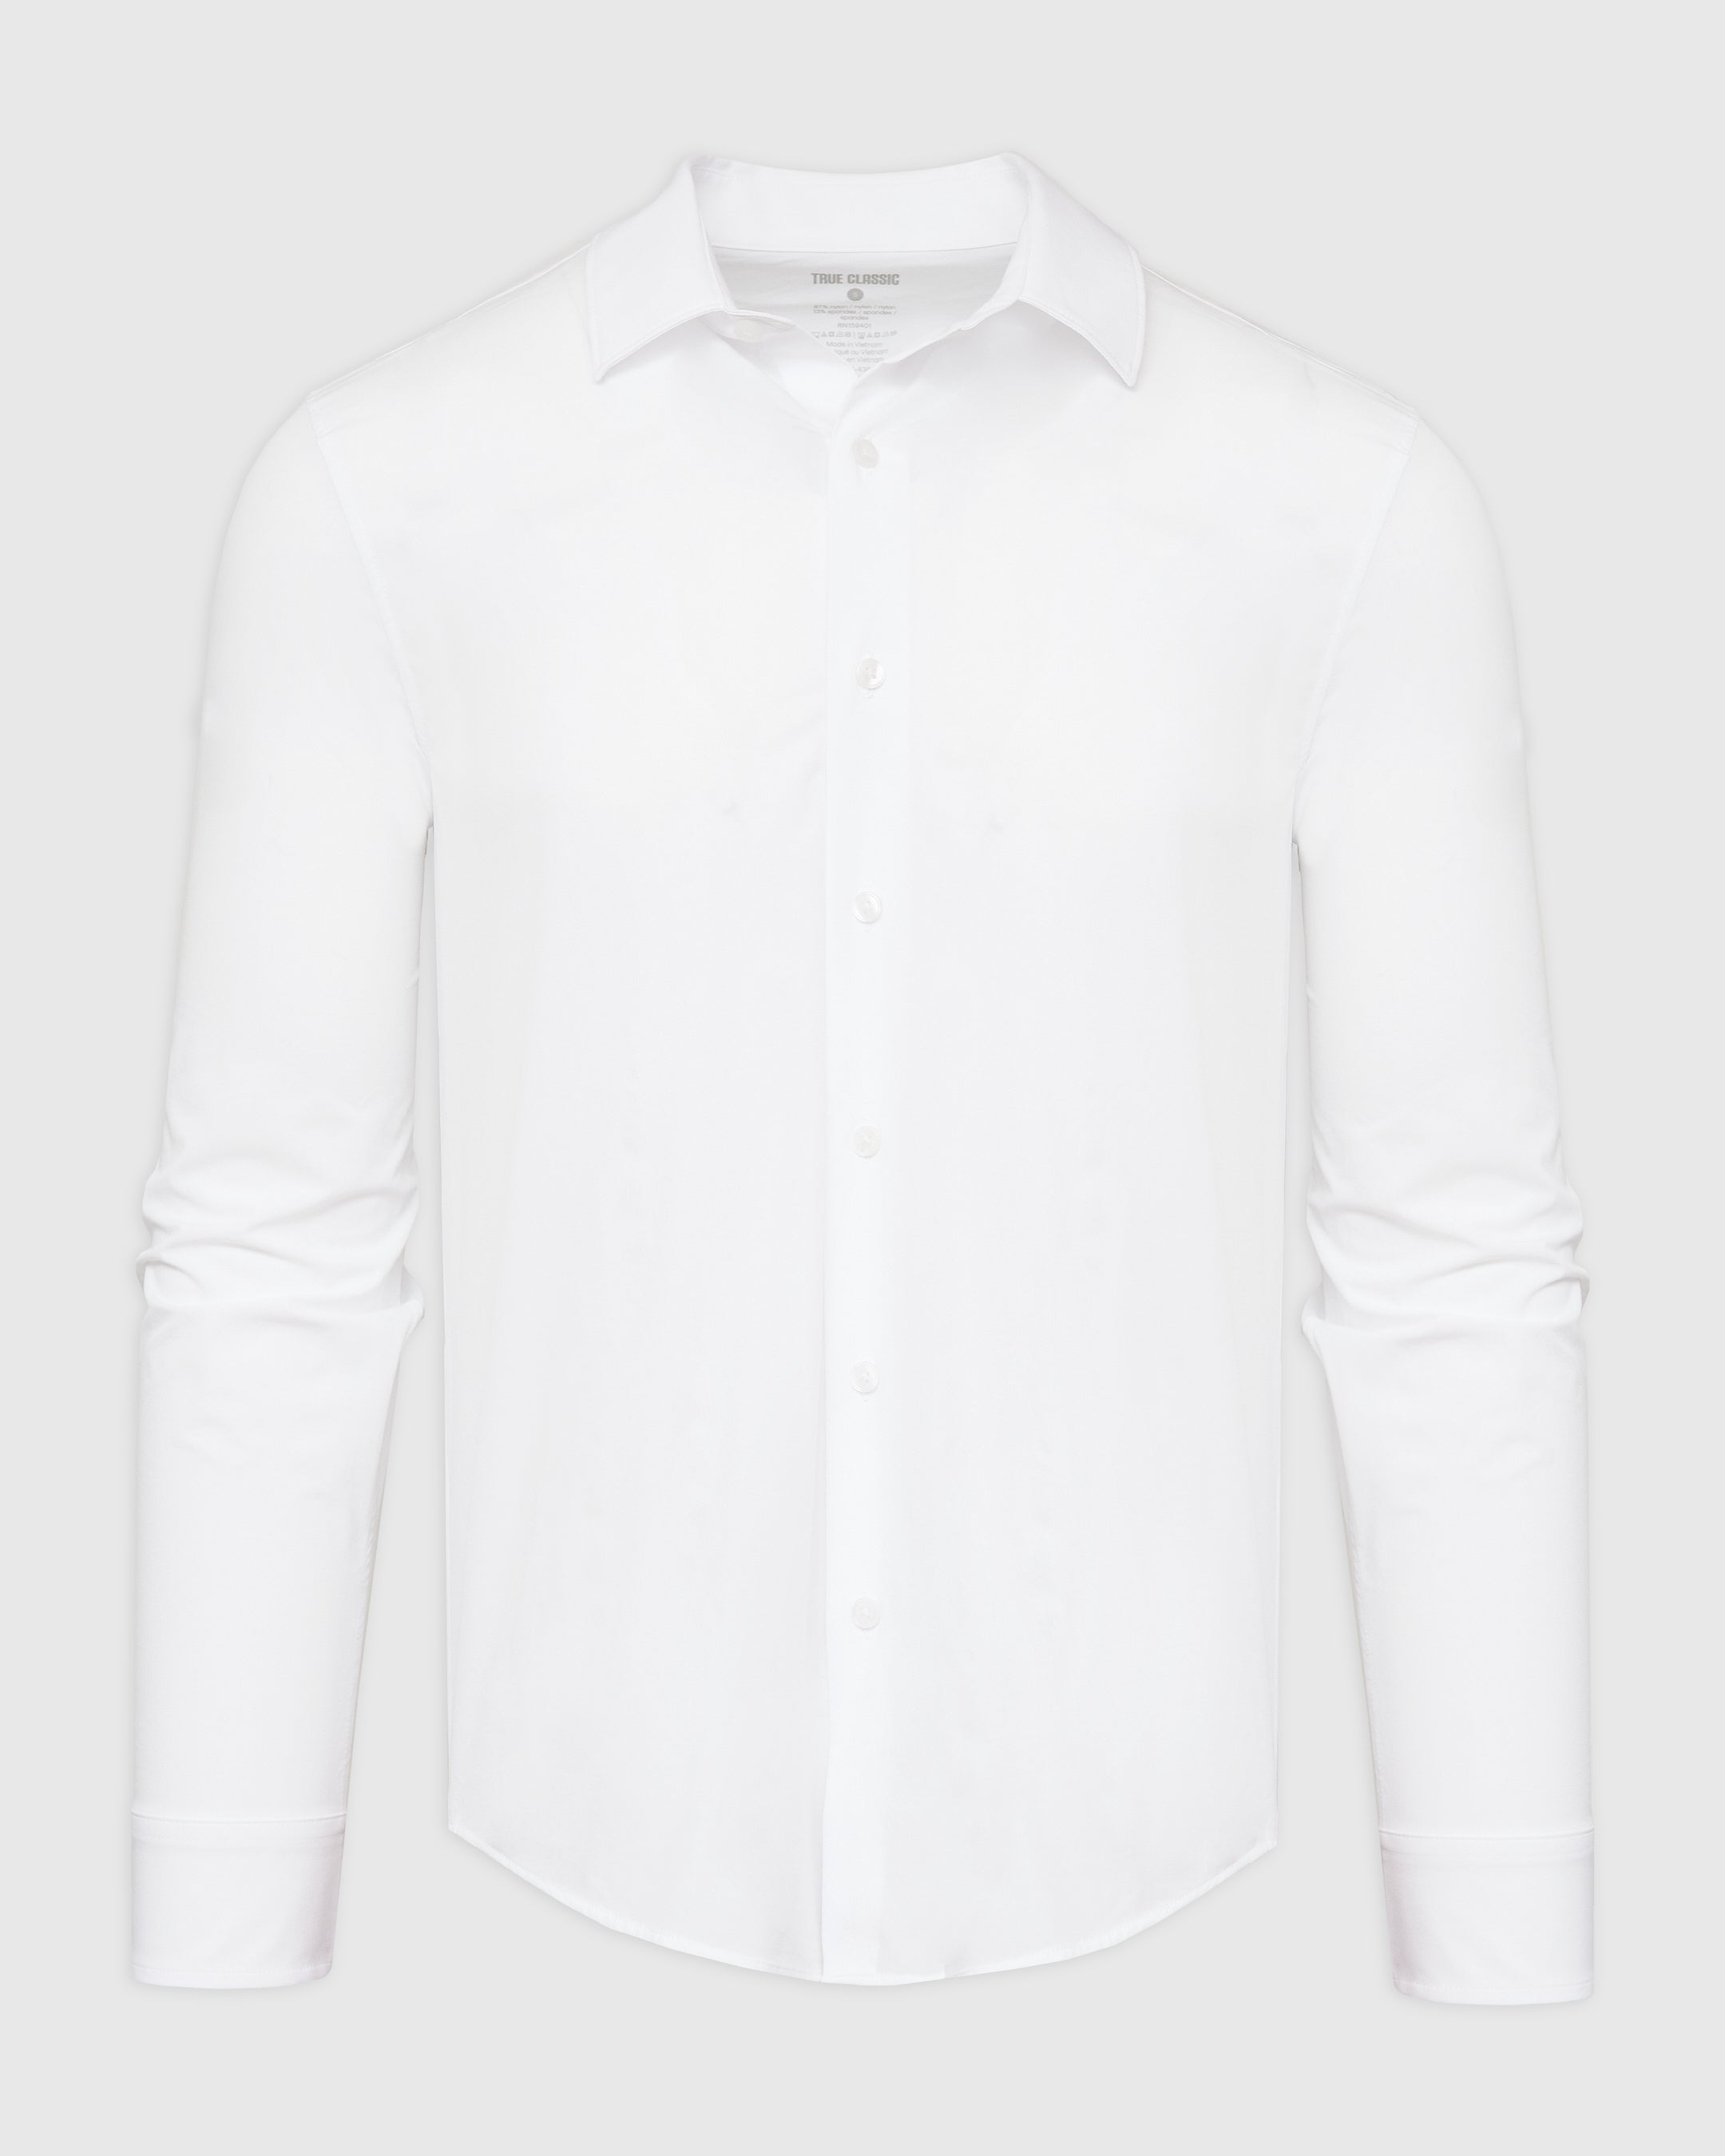 White Performance Lightweight Dress Shirt